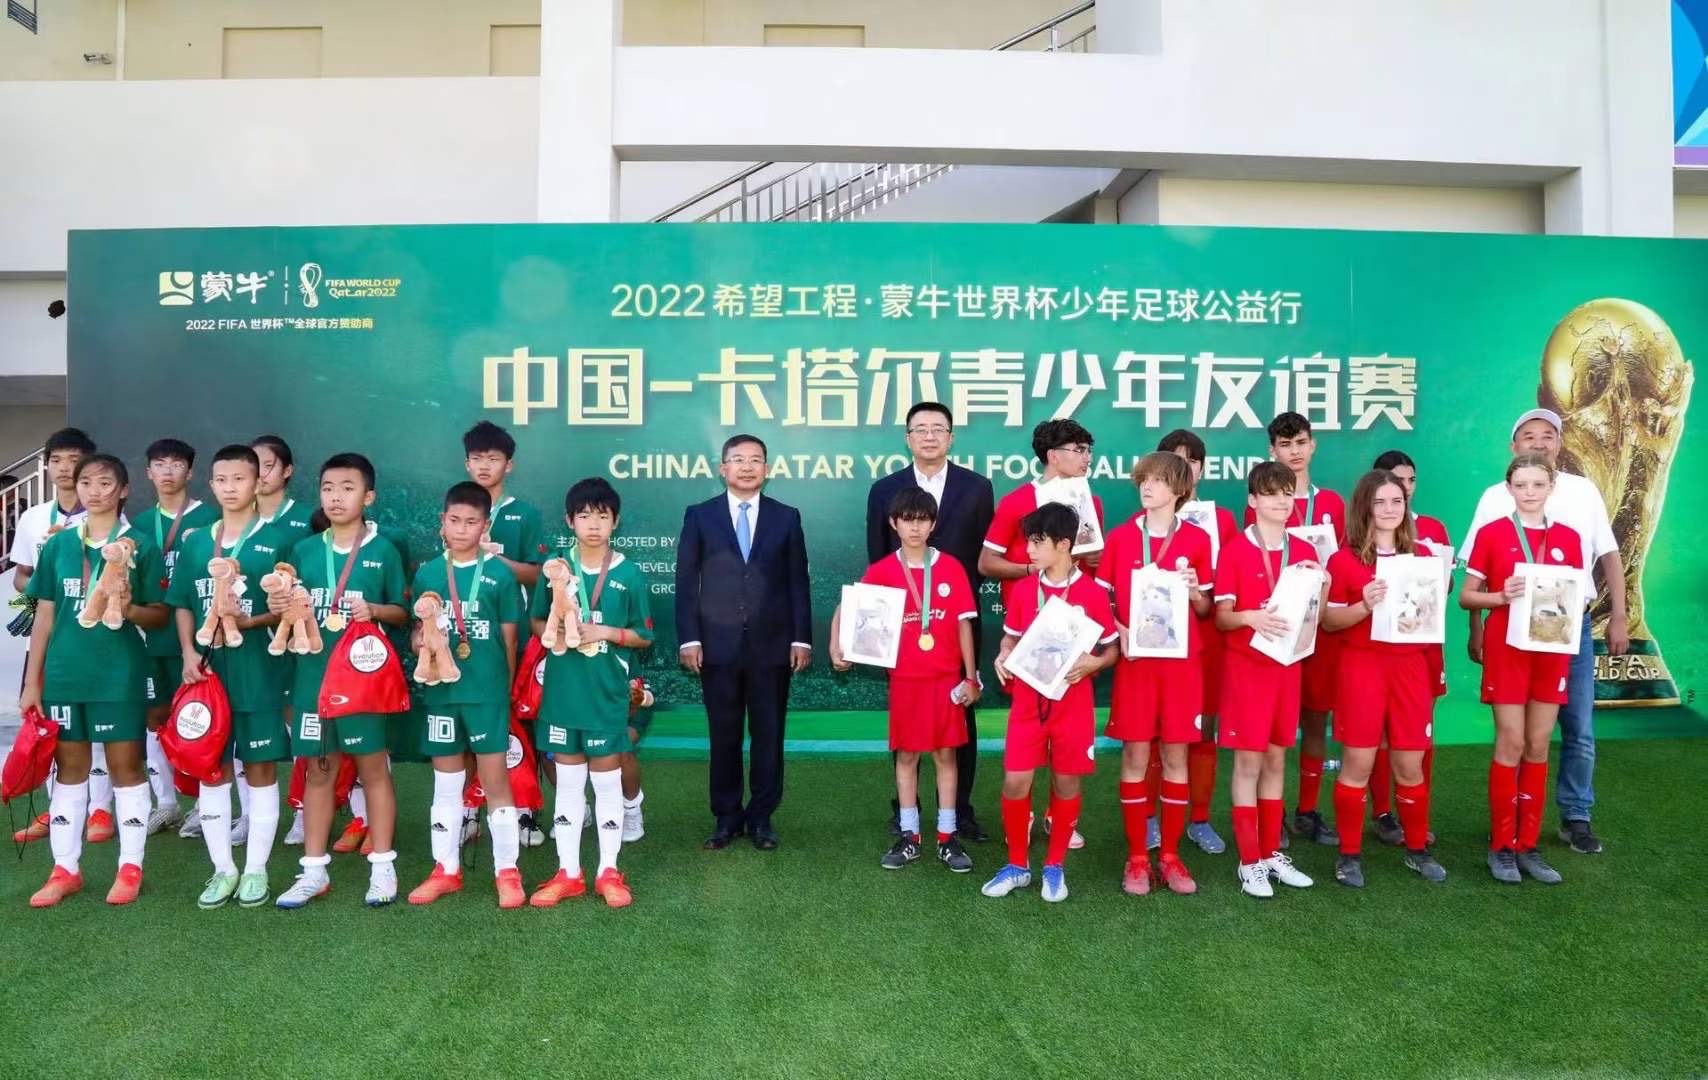 体育营销异军突起 中国成2022世界杯“隐形冠军”